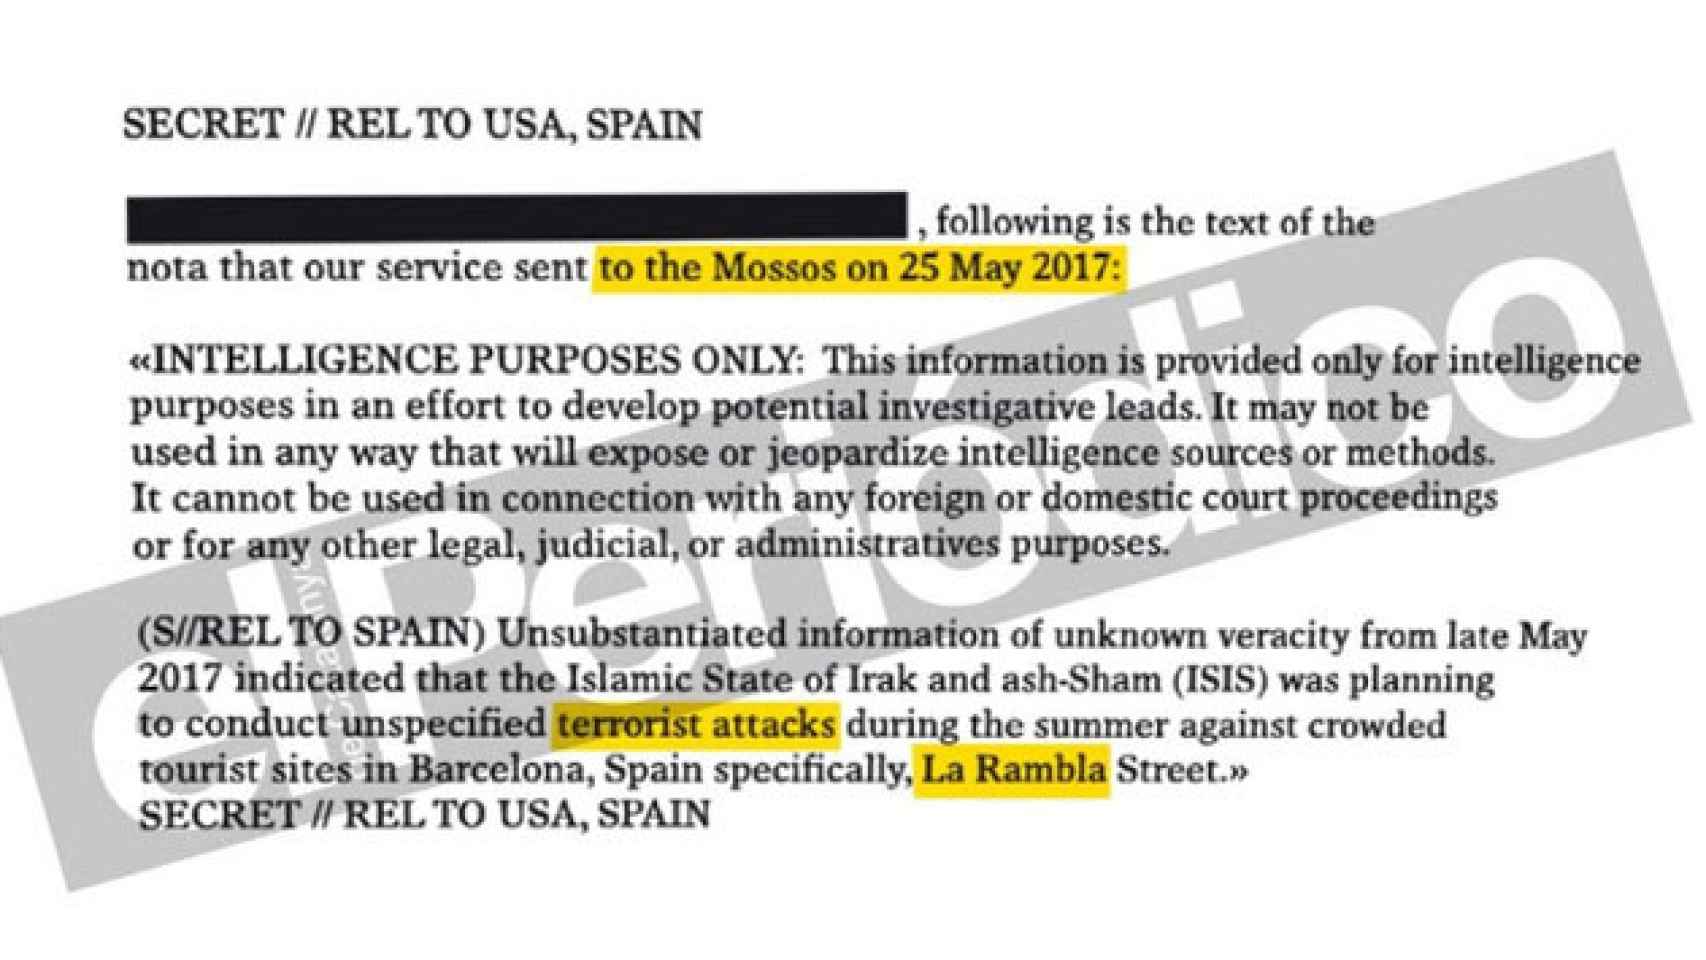 Comunicado enviado por la CIA a los Mossos d'Esquadra el 25 de mayo de 2017 alertando de un posible atentado terrorista en Las Ramblas